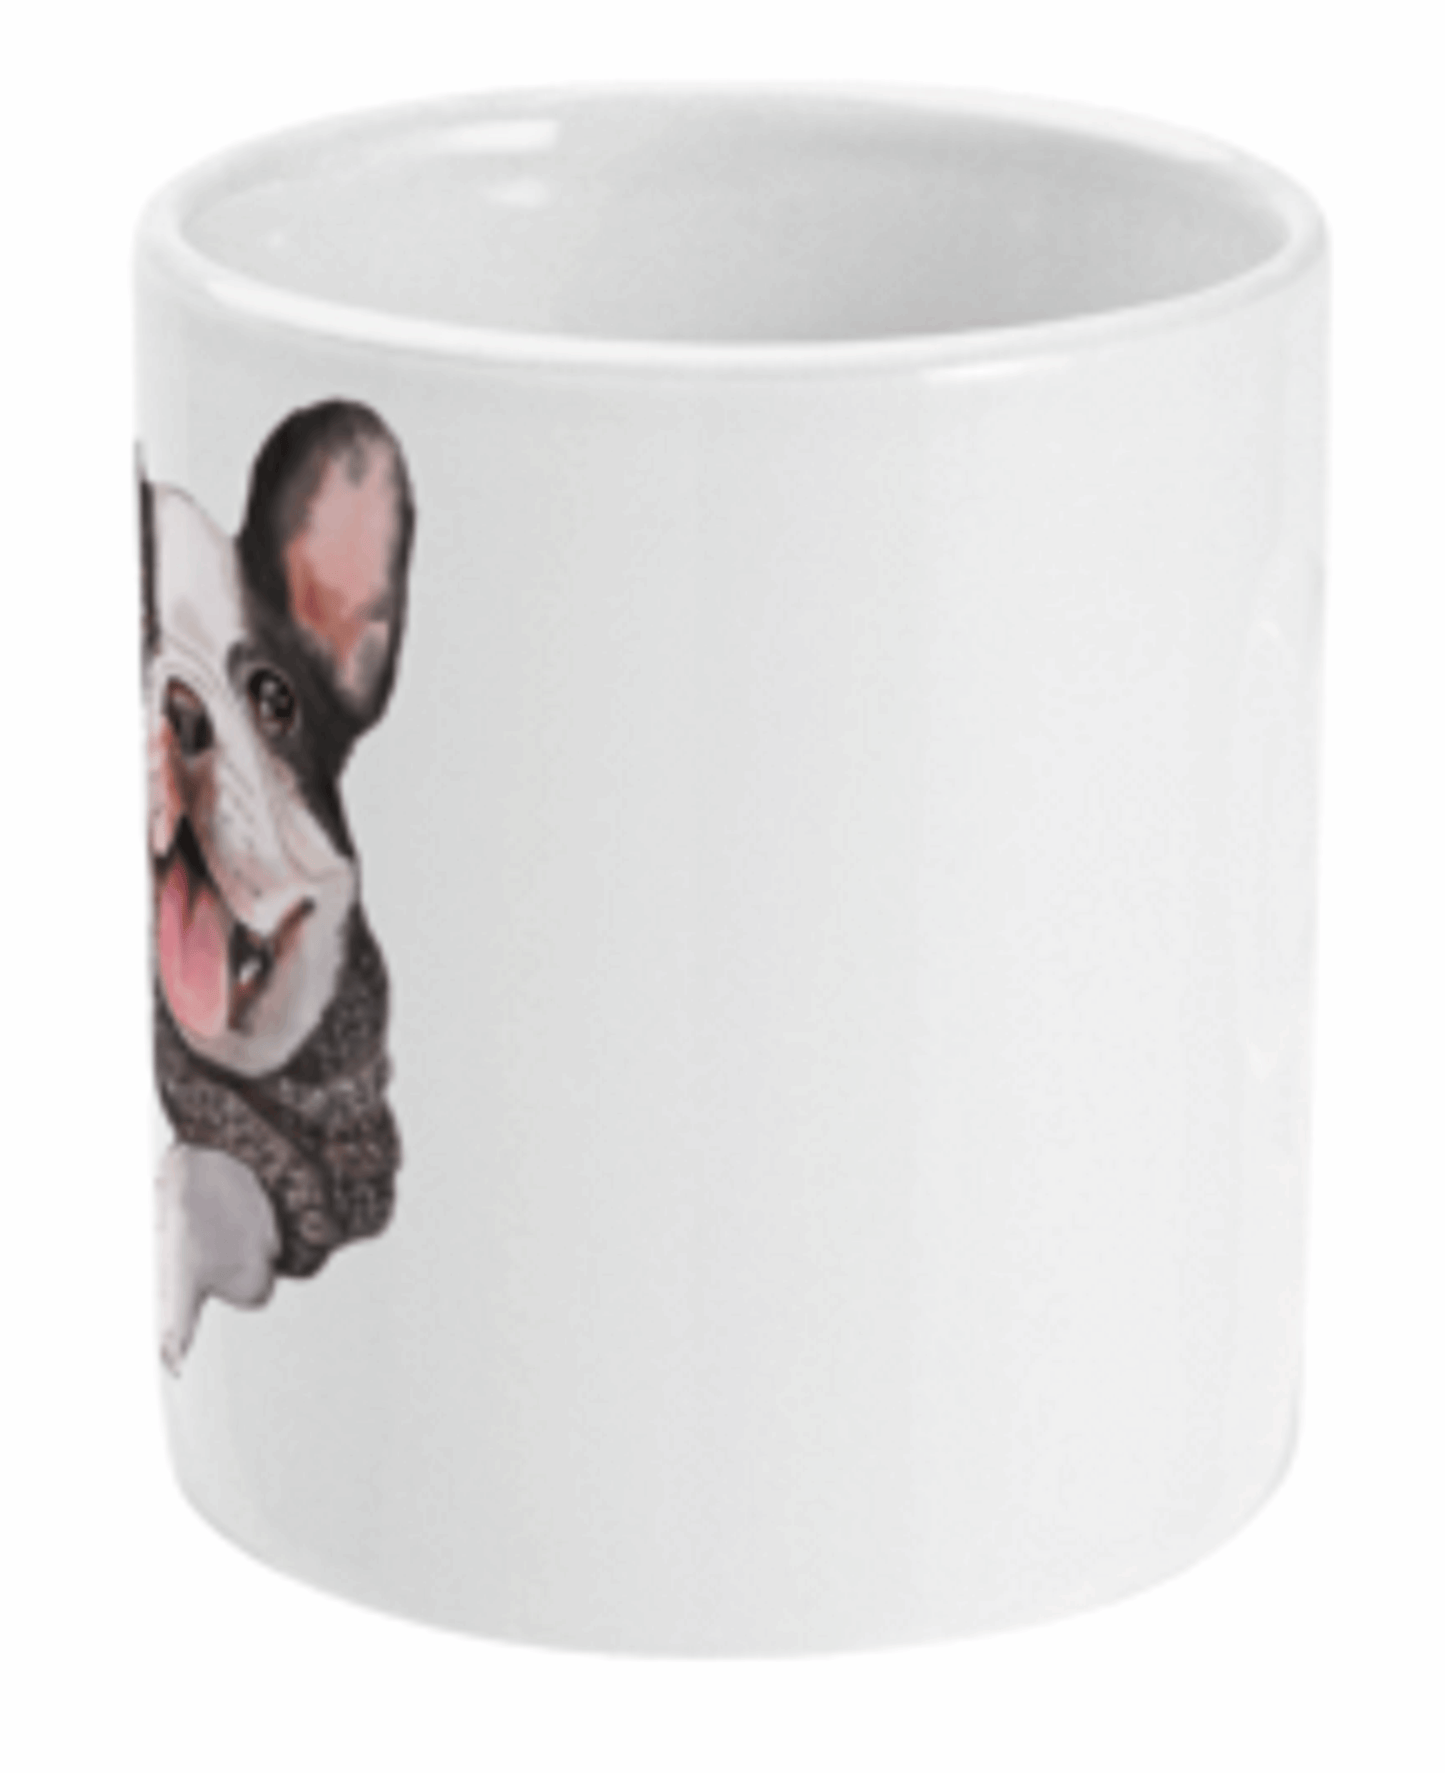  French Bulldog in Jumper Coffee Mug by Free Spirit Accessories sold by Free Spirit Accessories